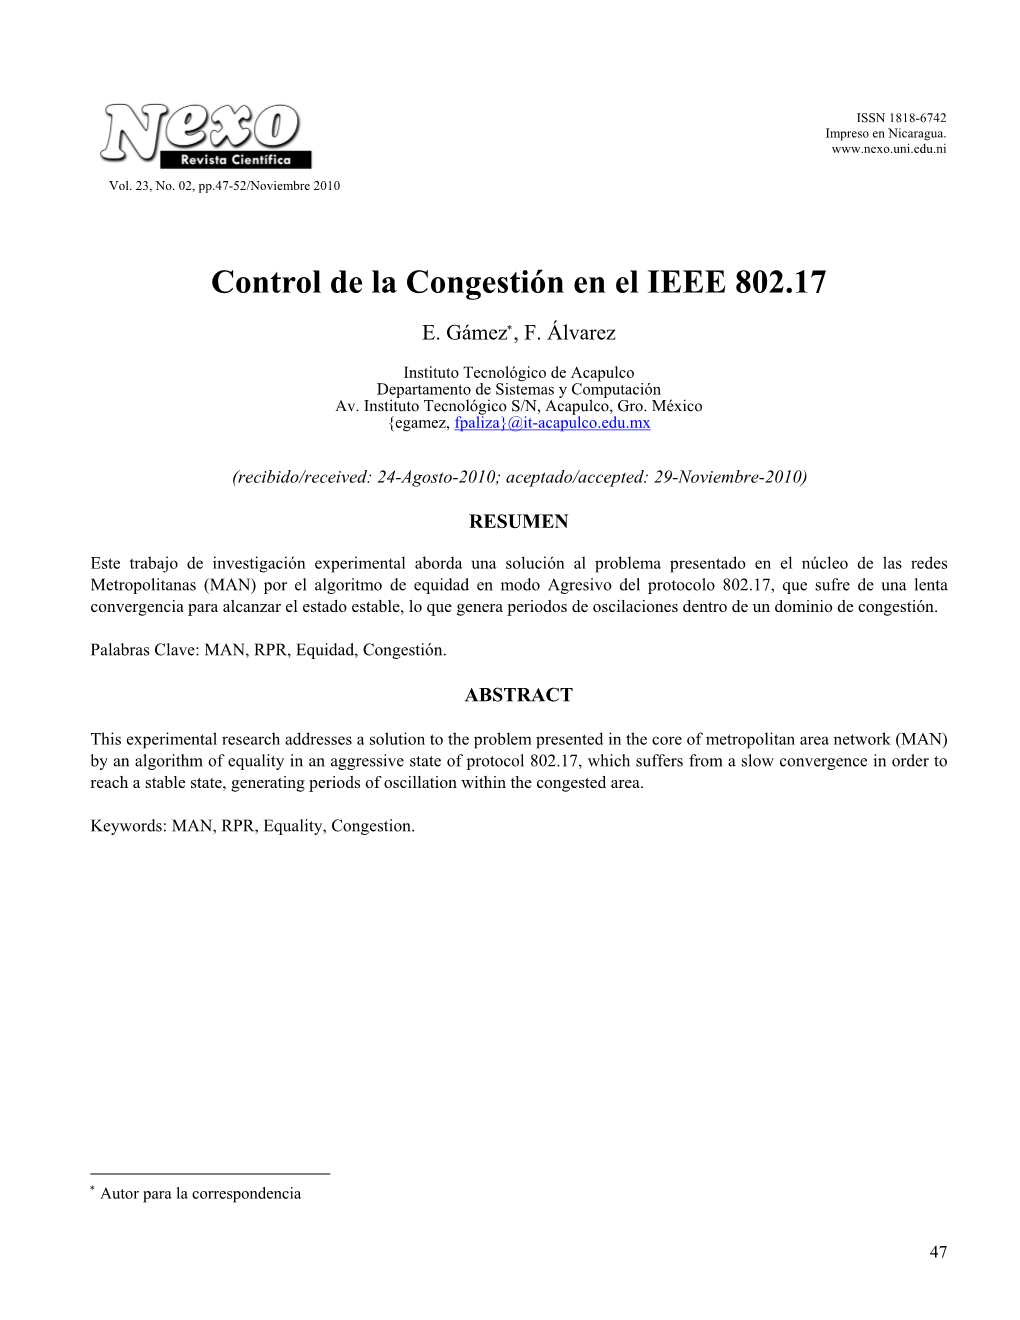 Control De La Congestión En El IEEE 802.17